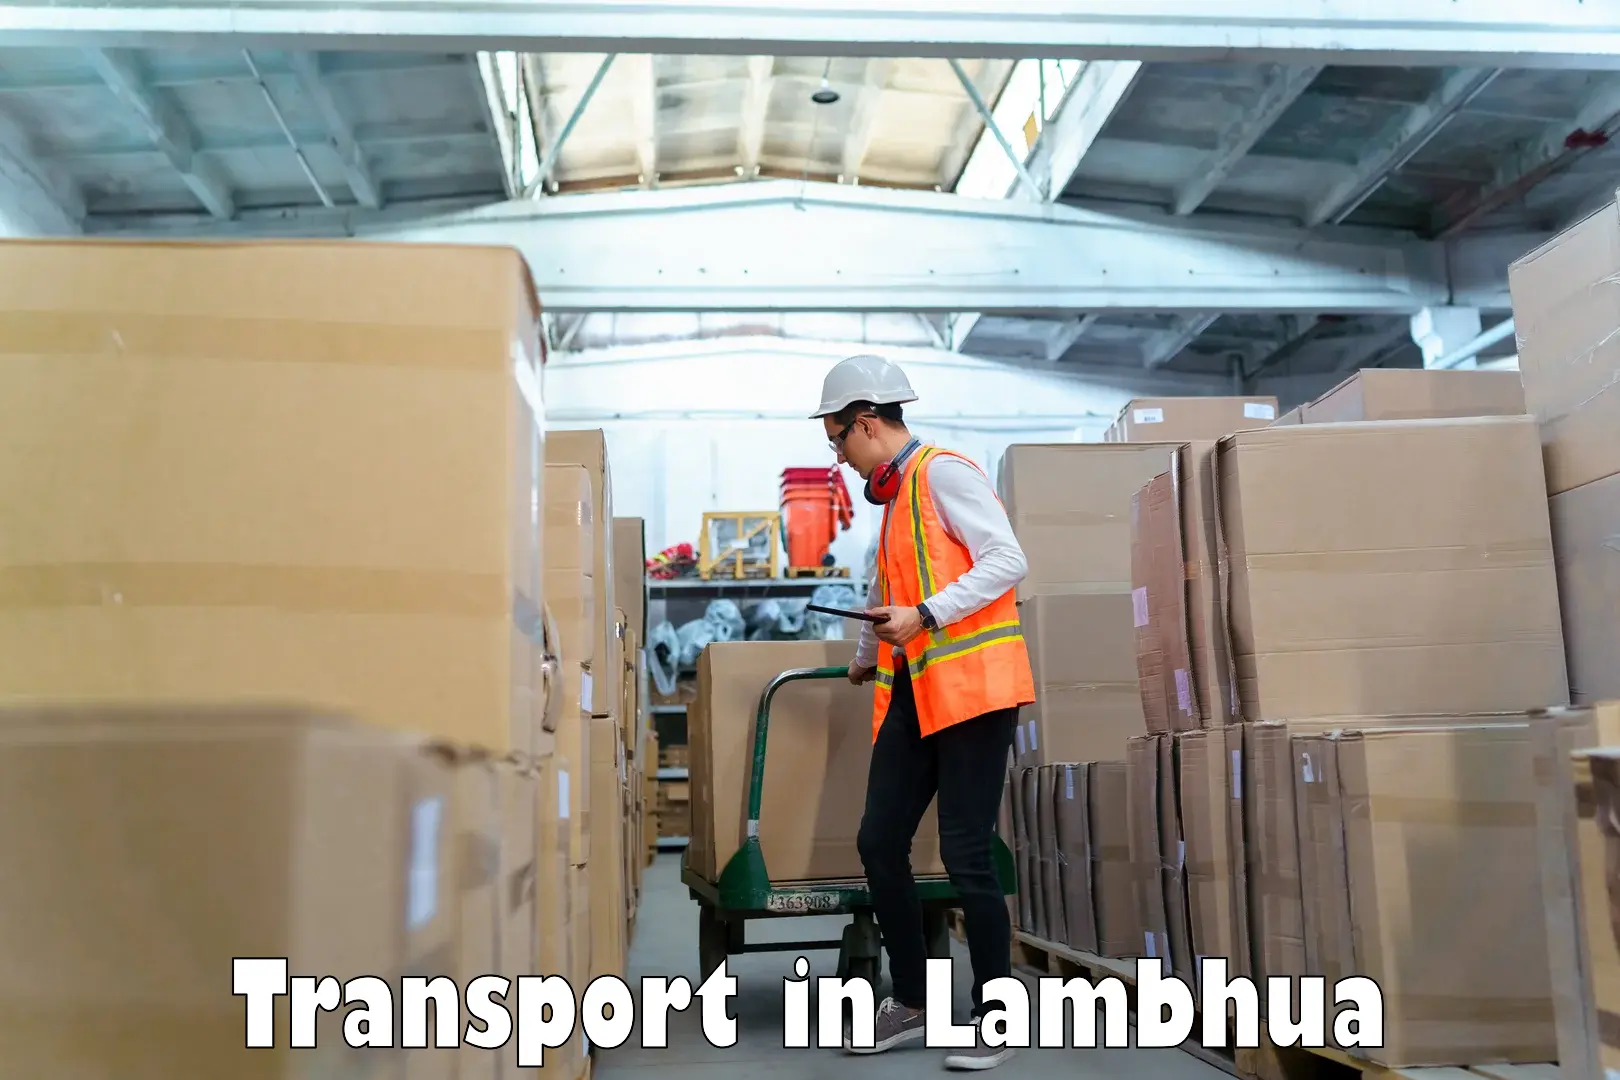 Container transport service in Lambhua